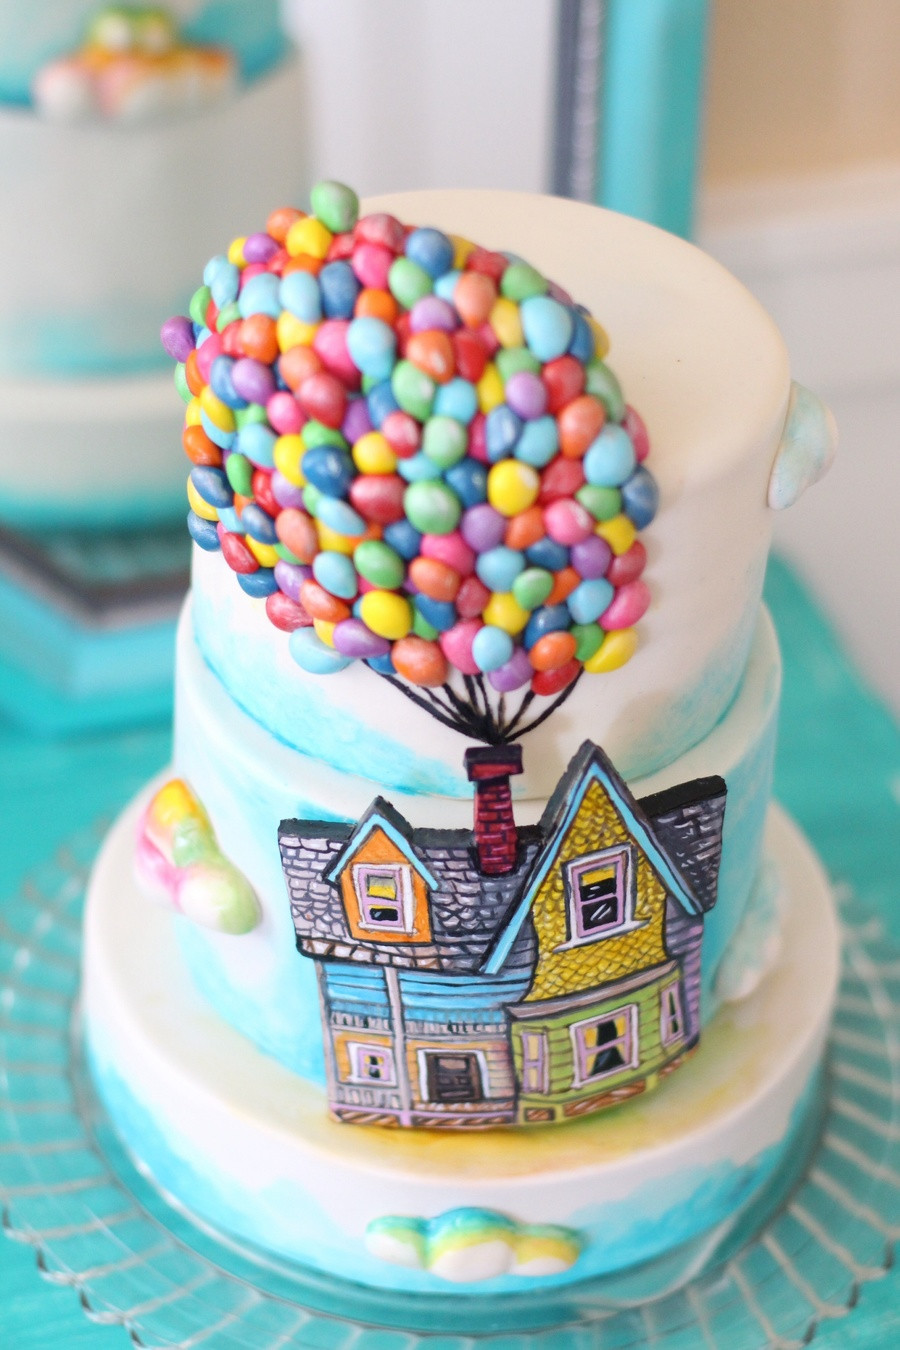 Fondant Birthday Cake
 Up Themed Cake A Billion Tiny Hand Made Fondant Balloons